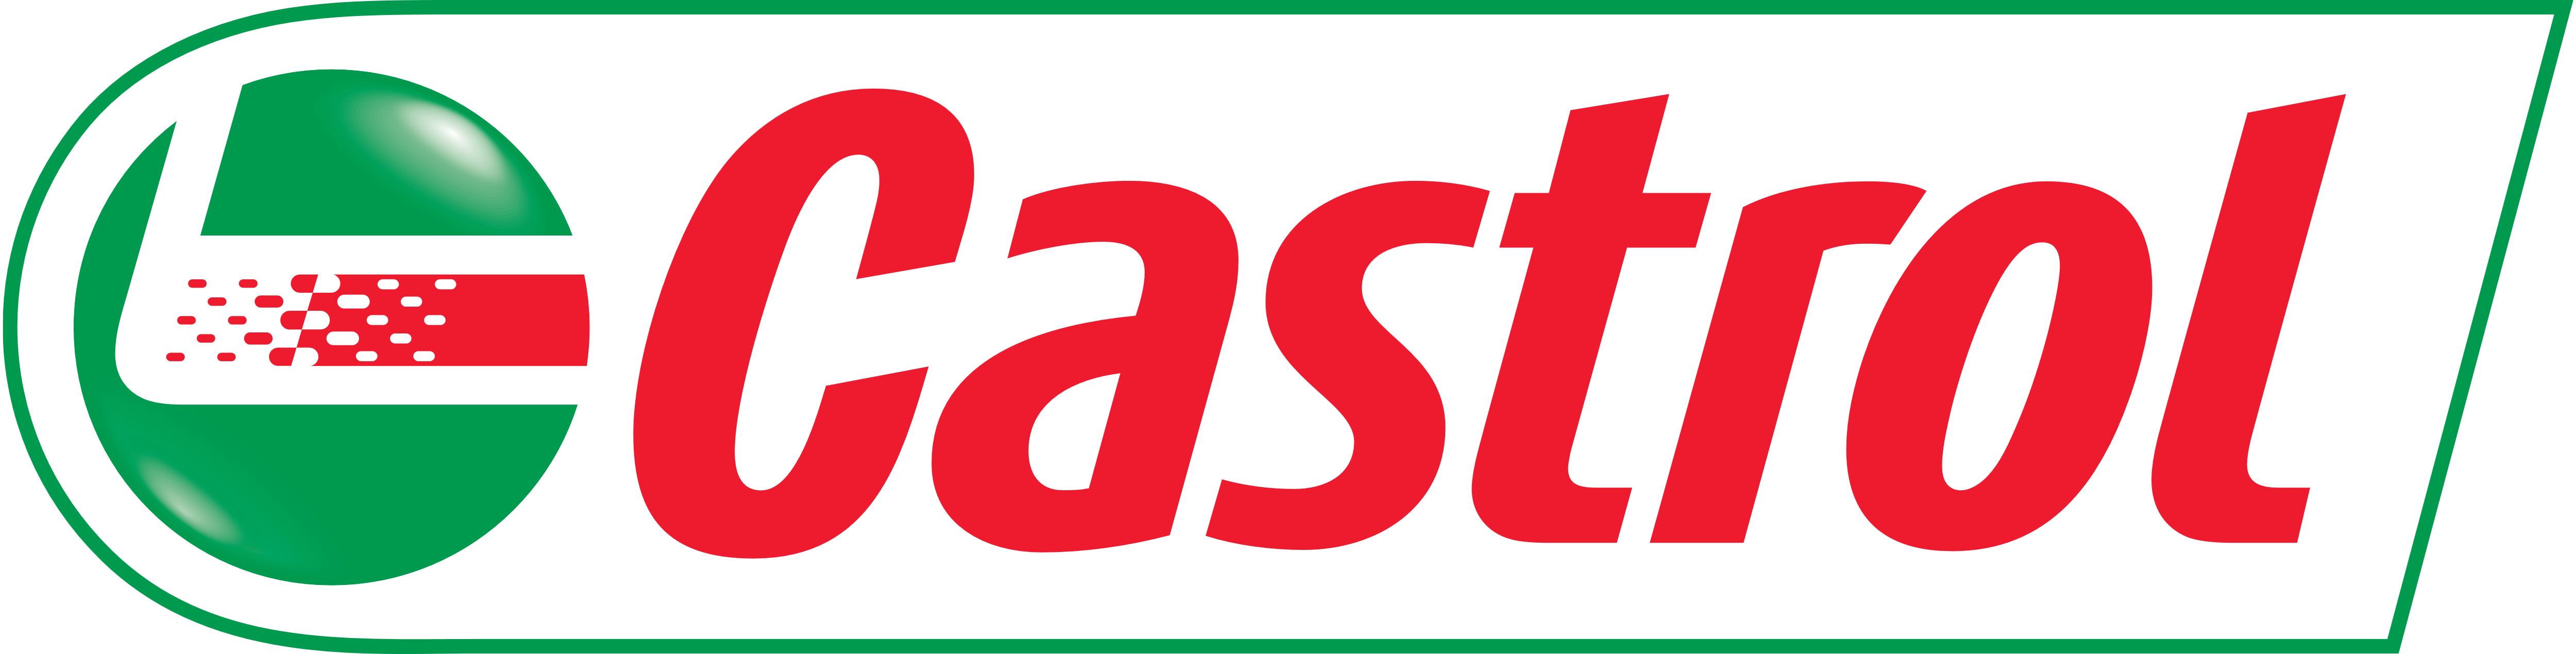 Castrol – Logos Download